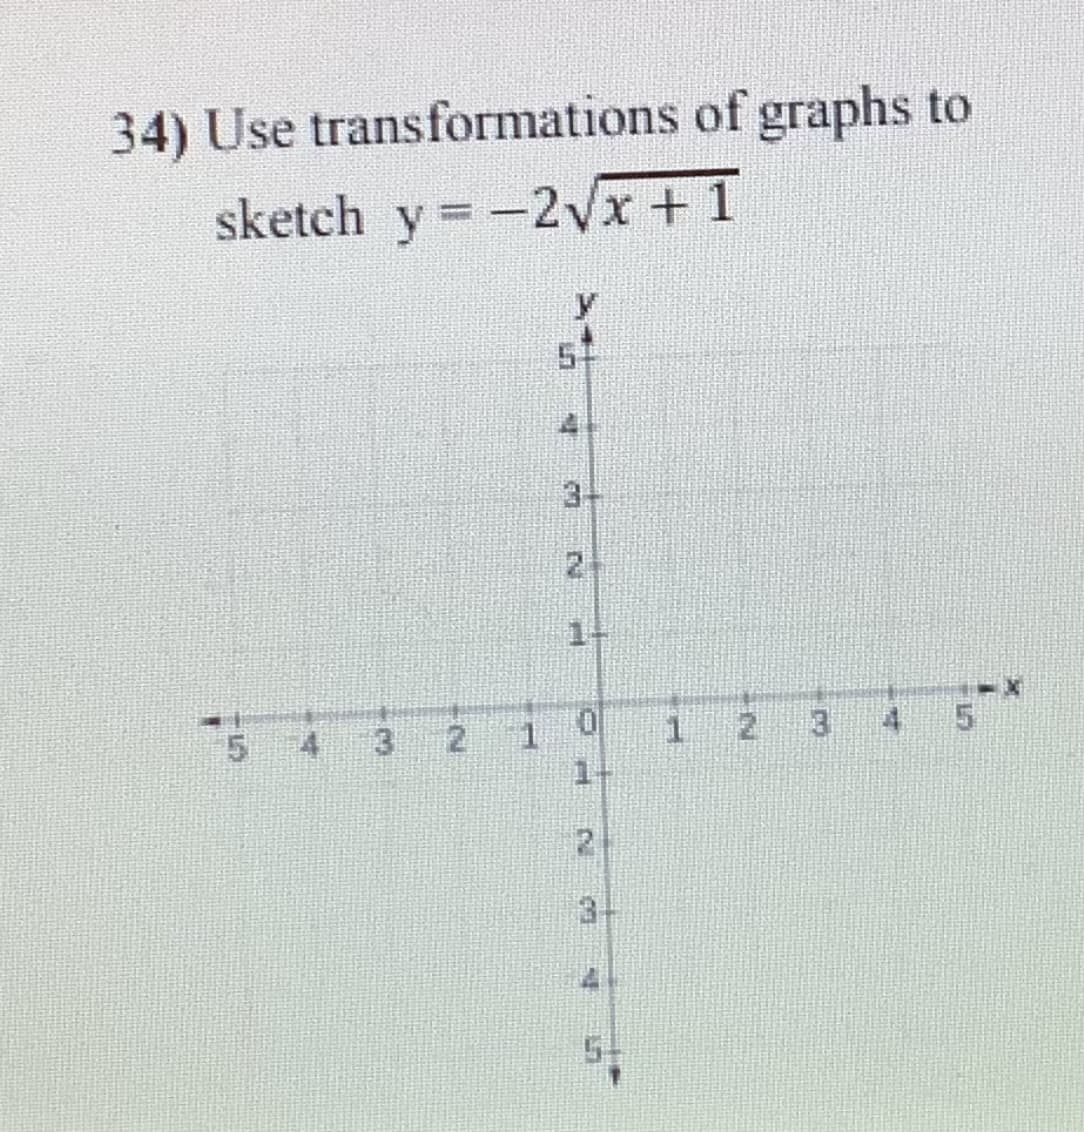 34) Use transformations of graphs to
sketch y = -2Vx+1
y.
3-
2.
21
1 2
3 4
1.
1+
3
2.
3.
4.
